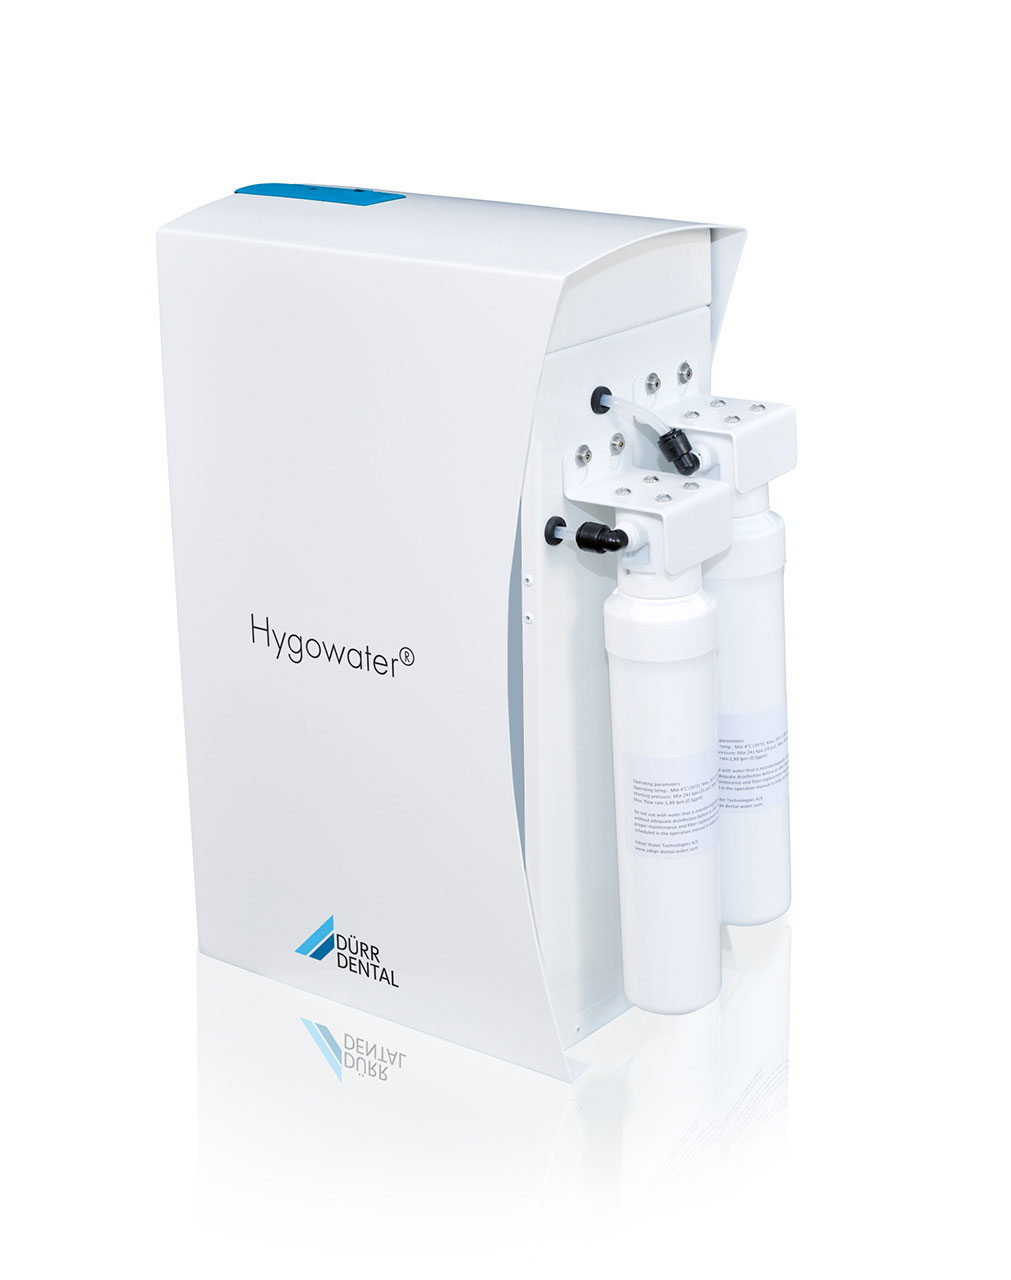 Der Hygowater Booster: Gerätemodul für Hygowater als zentrale Lösung für die Versorgung von bis zu sechs Behandlungseinheiten.